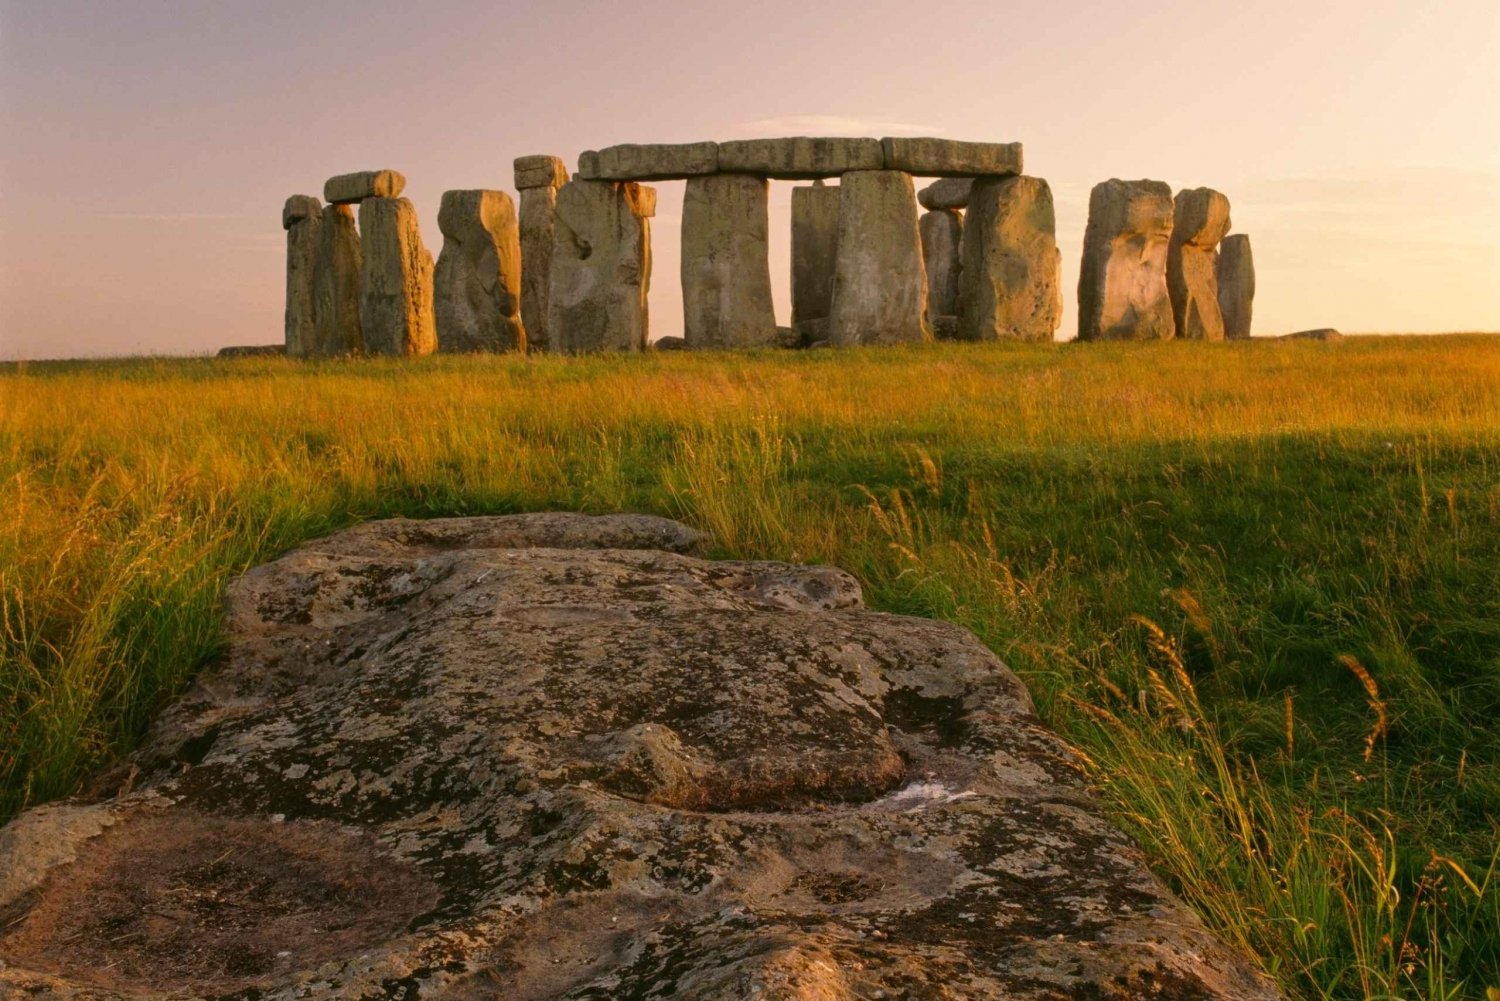 Londres : visite en petit groupe de Stonehenge, Glastonbury et Avebury